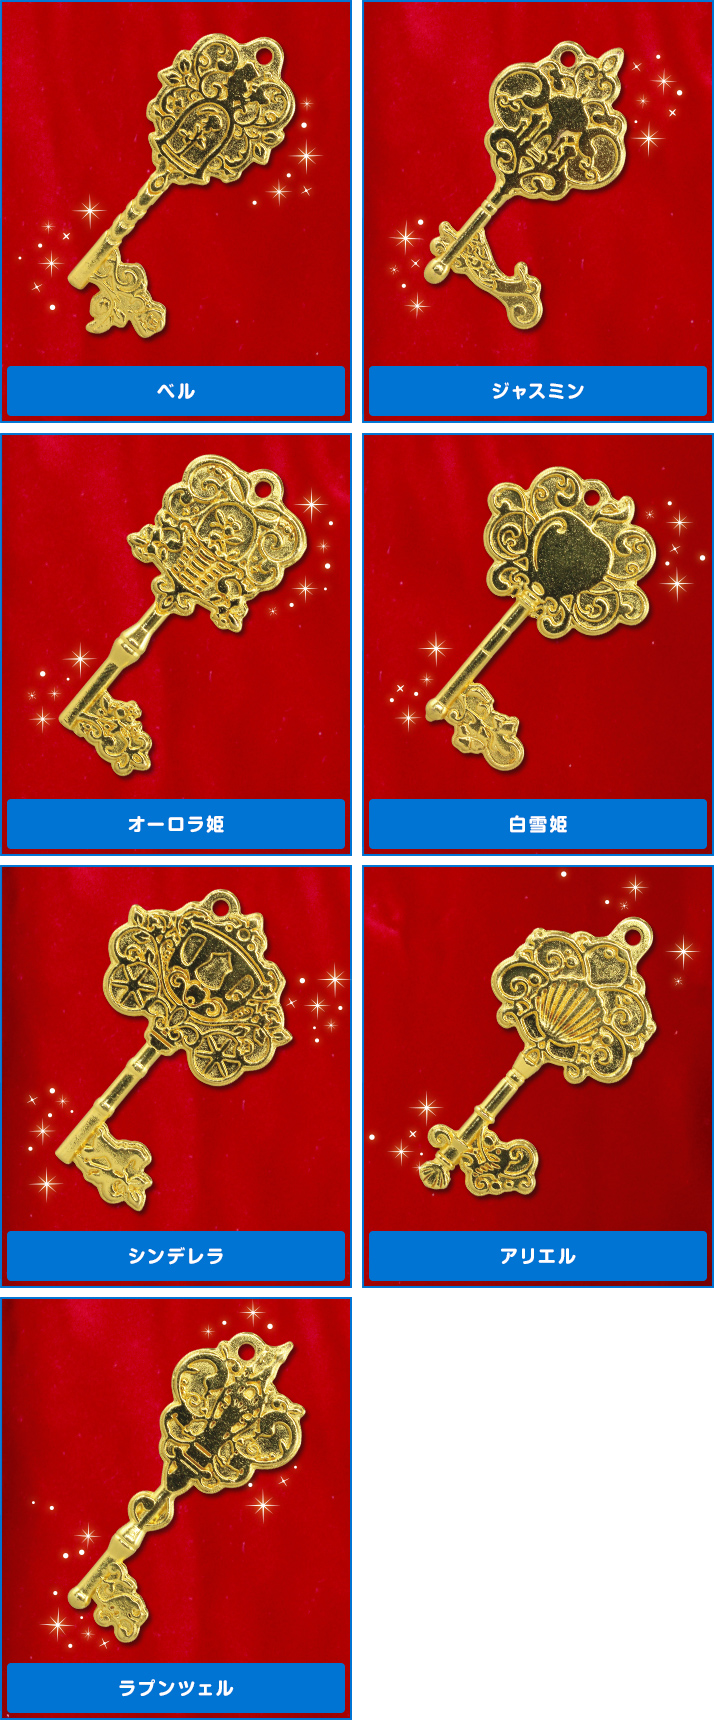 ディズニープリンセス 王室の鍵コレクション ディズニーピックアップ商品 バックナンバー ディズニー タカラトミーアーツ